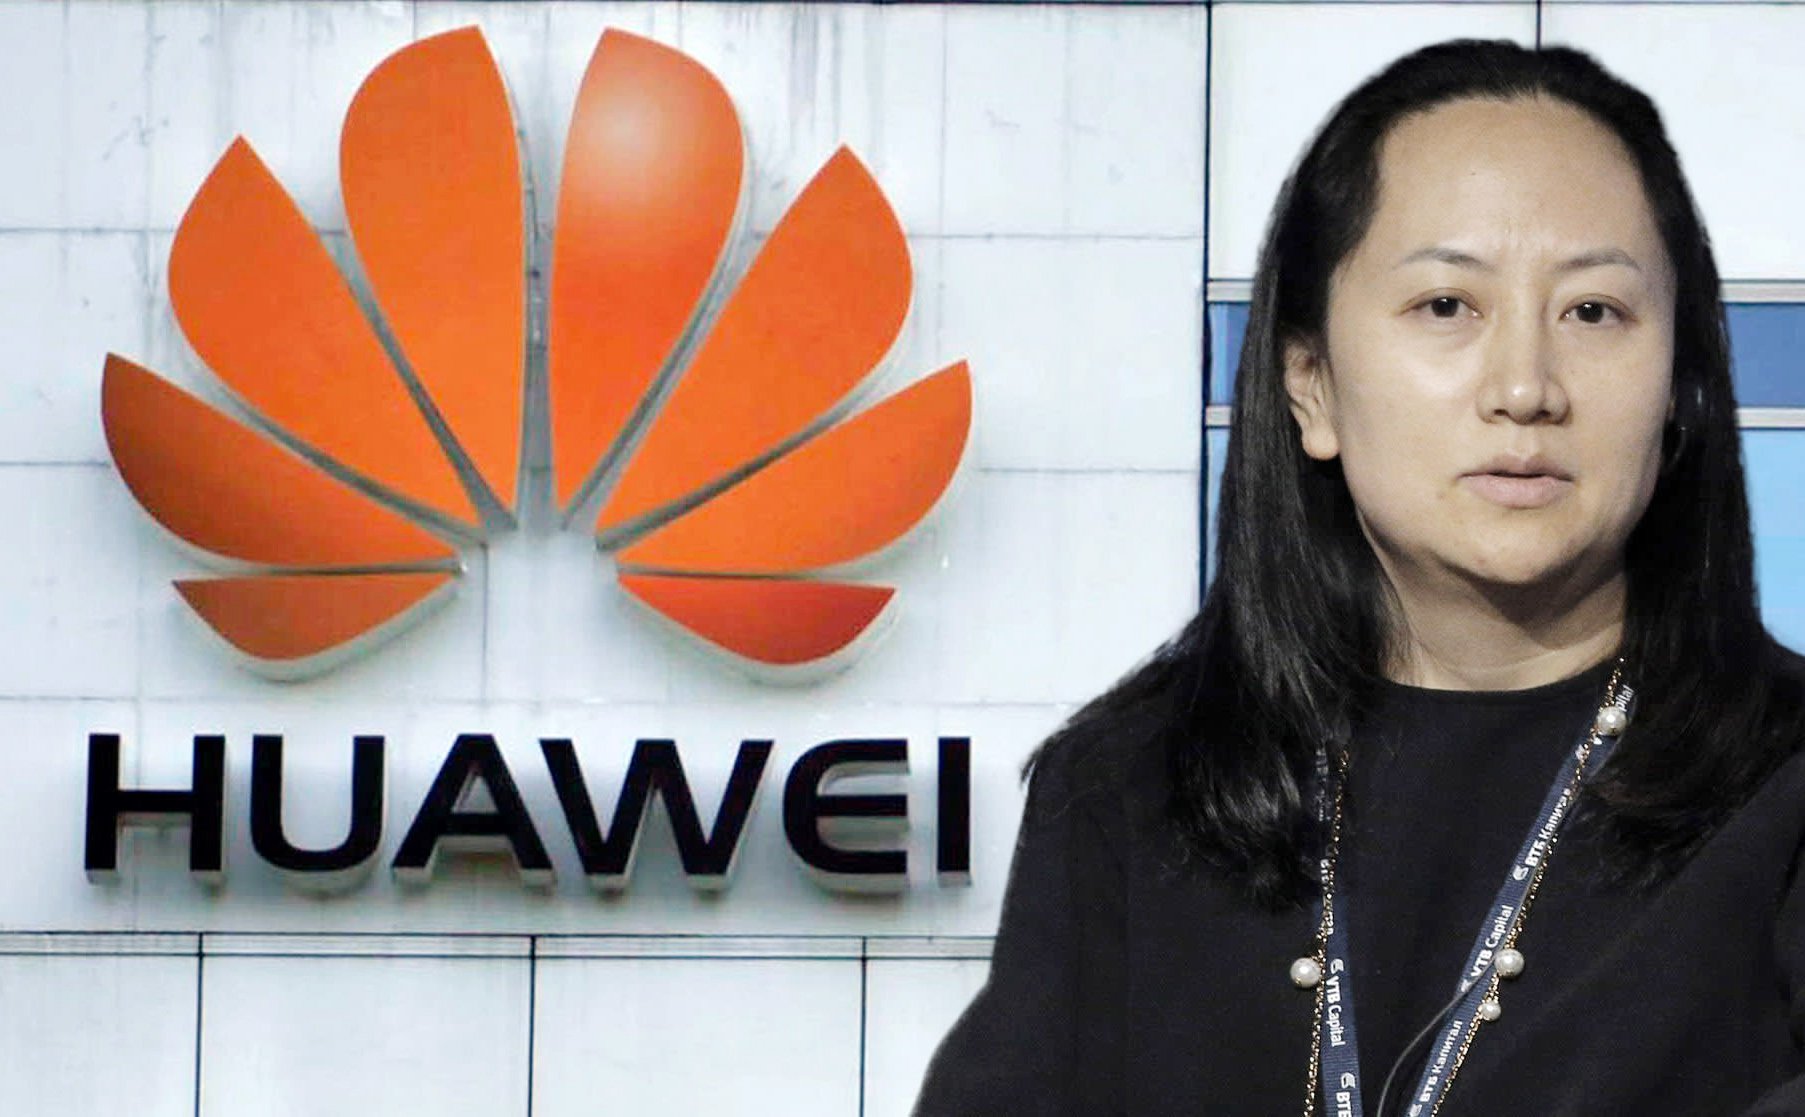 CFO Huawei kiện Canada bắt giữ người trái phép, vi phạm nhân quyền